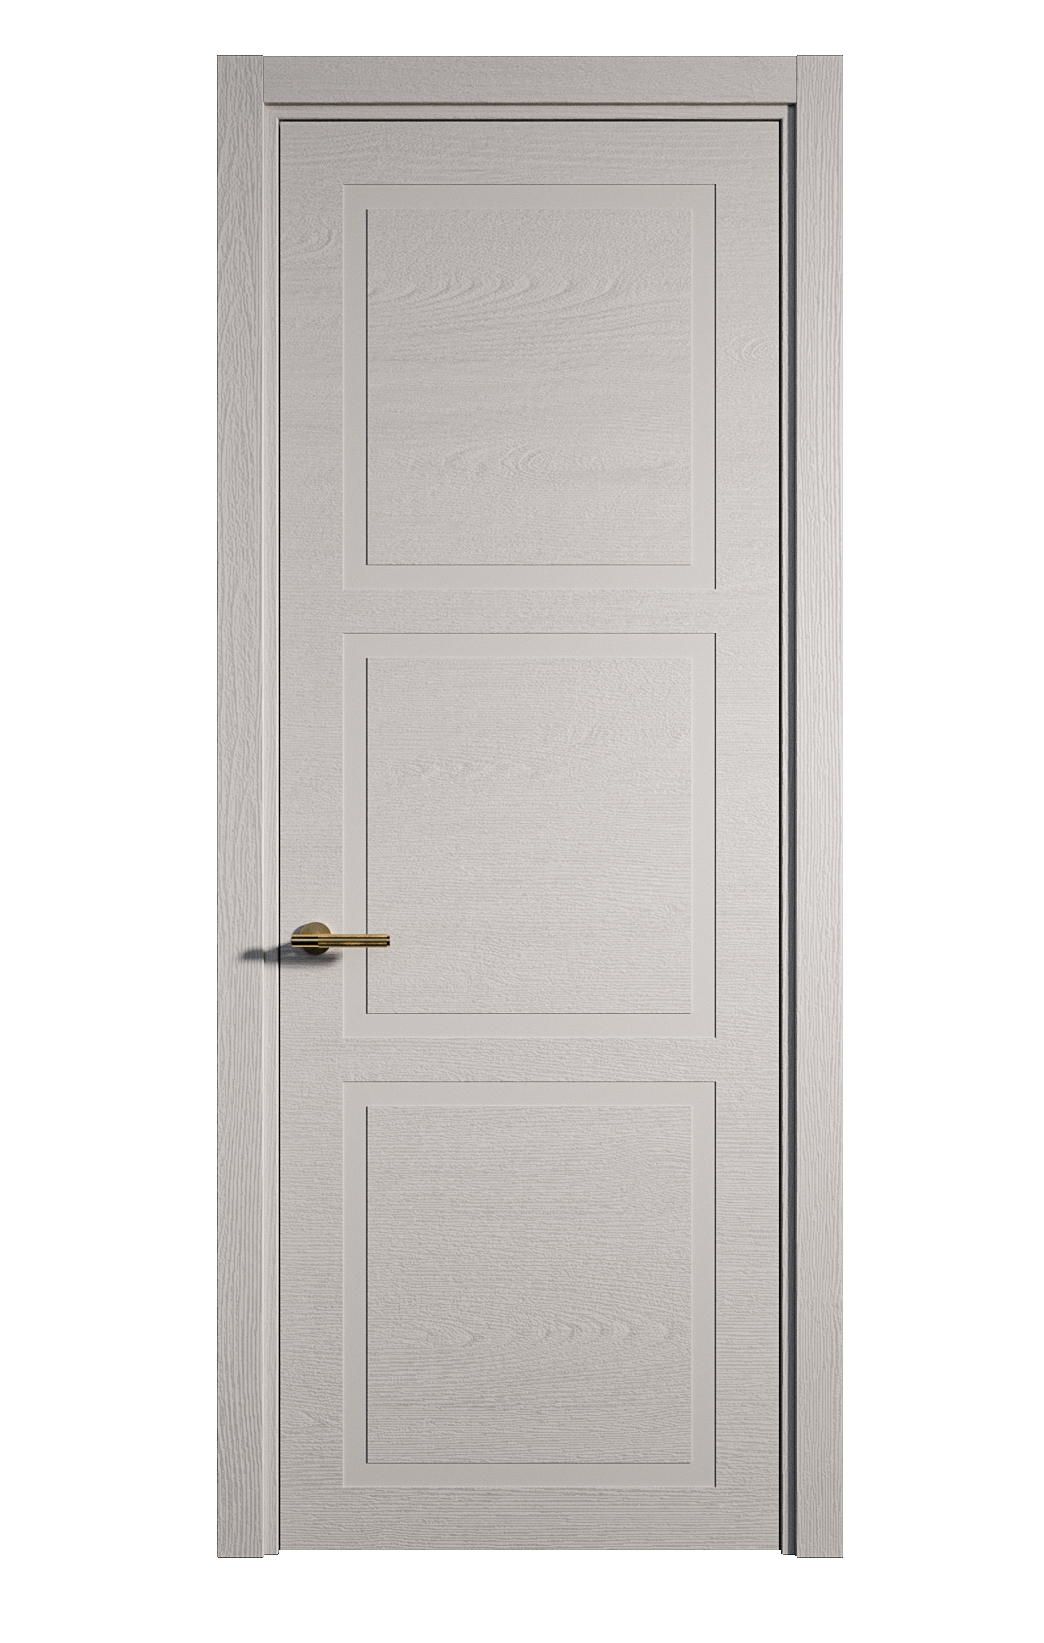 Межкомнатная дверь Бостон-3 глухая эмаль ral 7047 24475